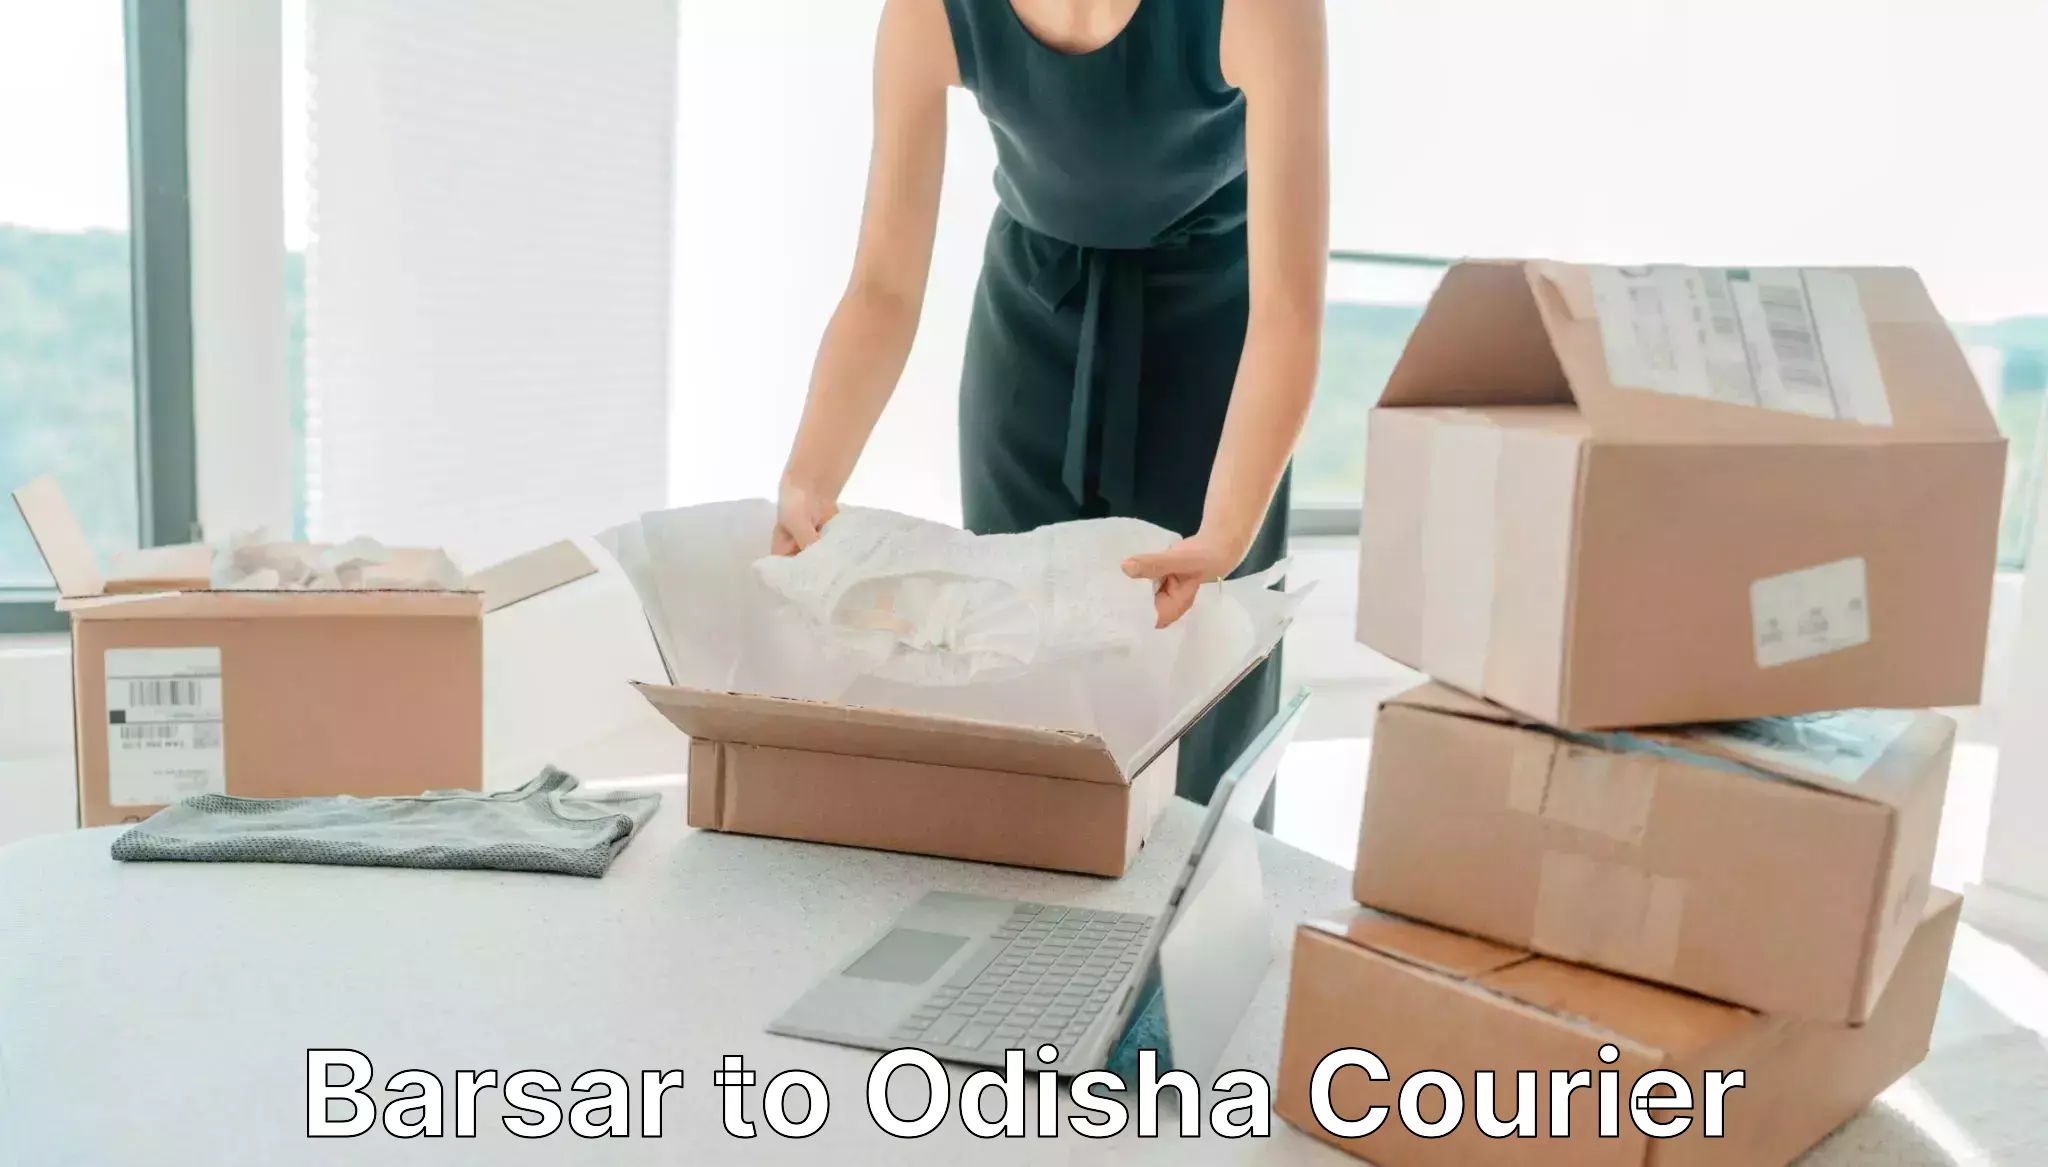 Courier service comparison in Barsar to Raruan